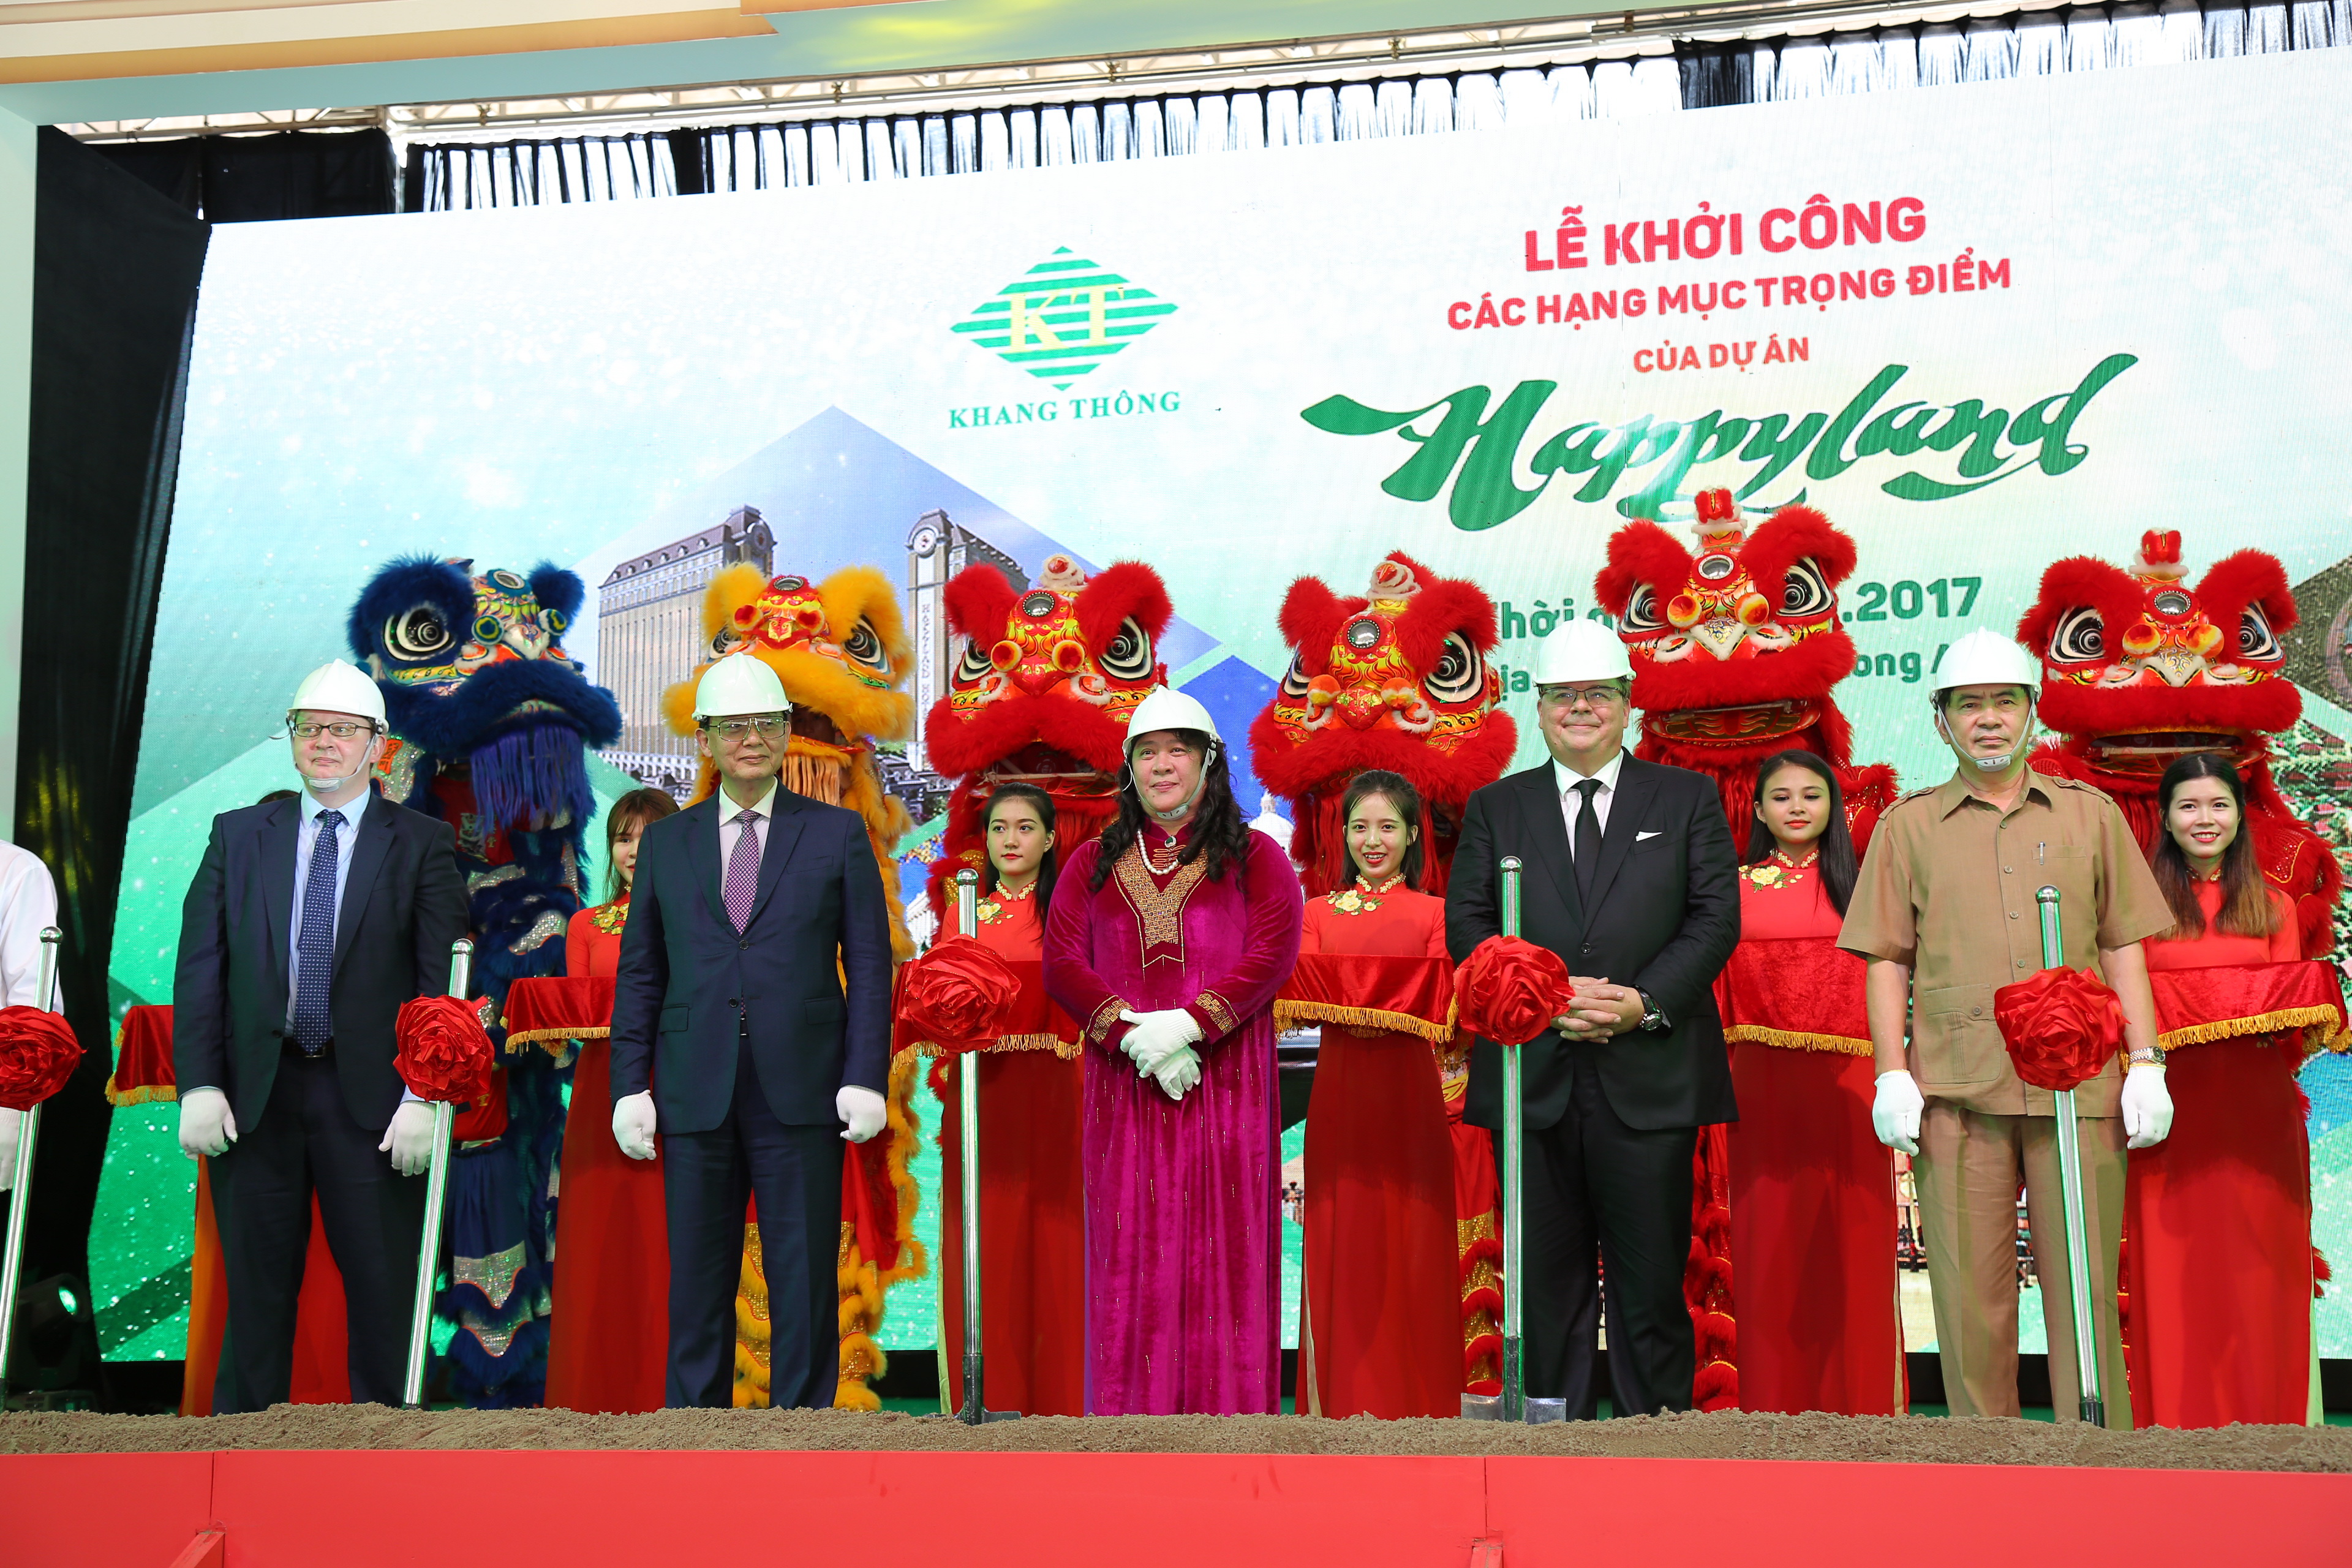 Bà Phan Thị Phương Thảo - Chủ tịch HĐQT Tập đoàn Khang Thông tại buổi lễ